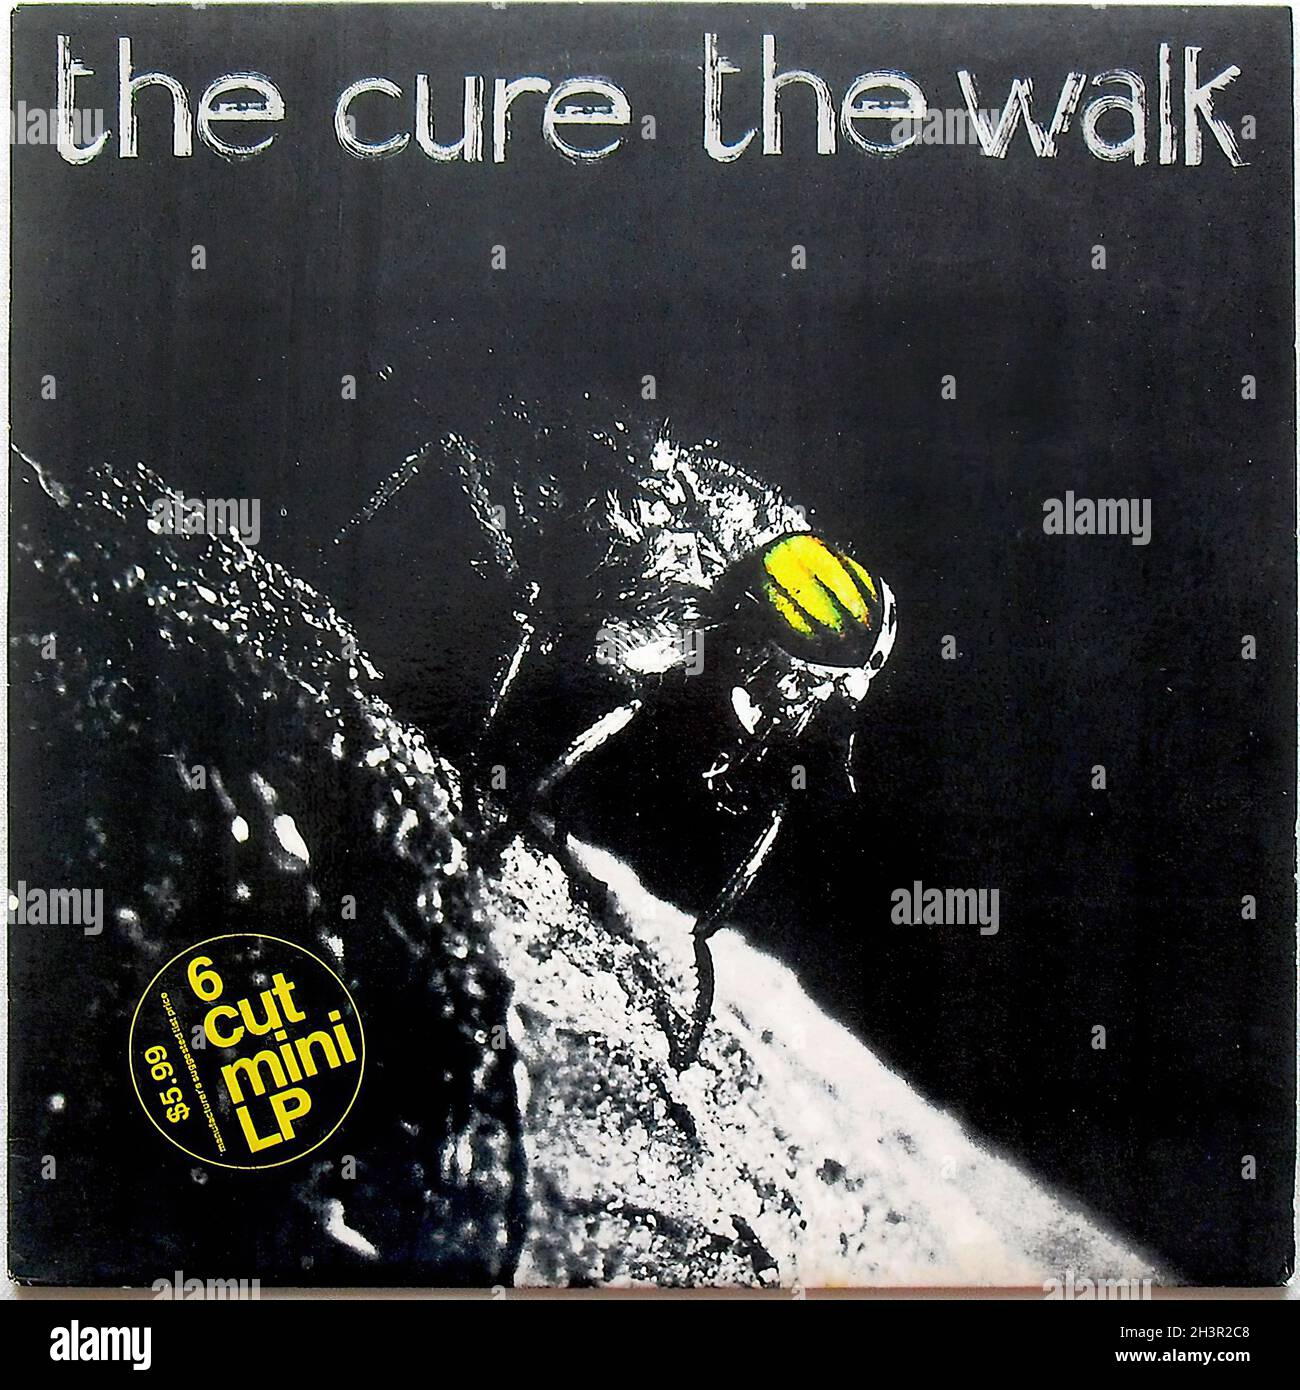 The Cure 1983 The Walk Ep Álbum de Vinilo LP Single Fotografía de